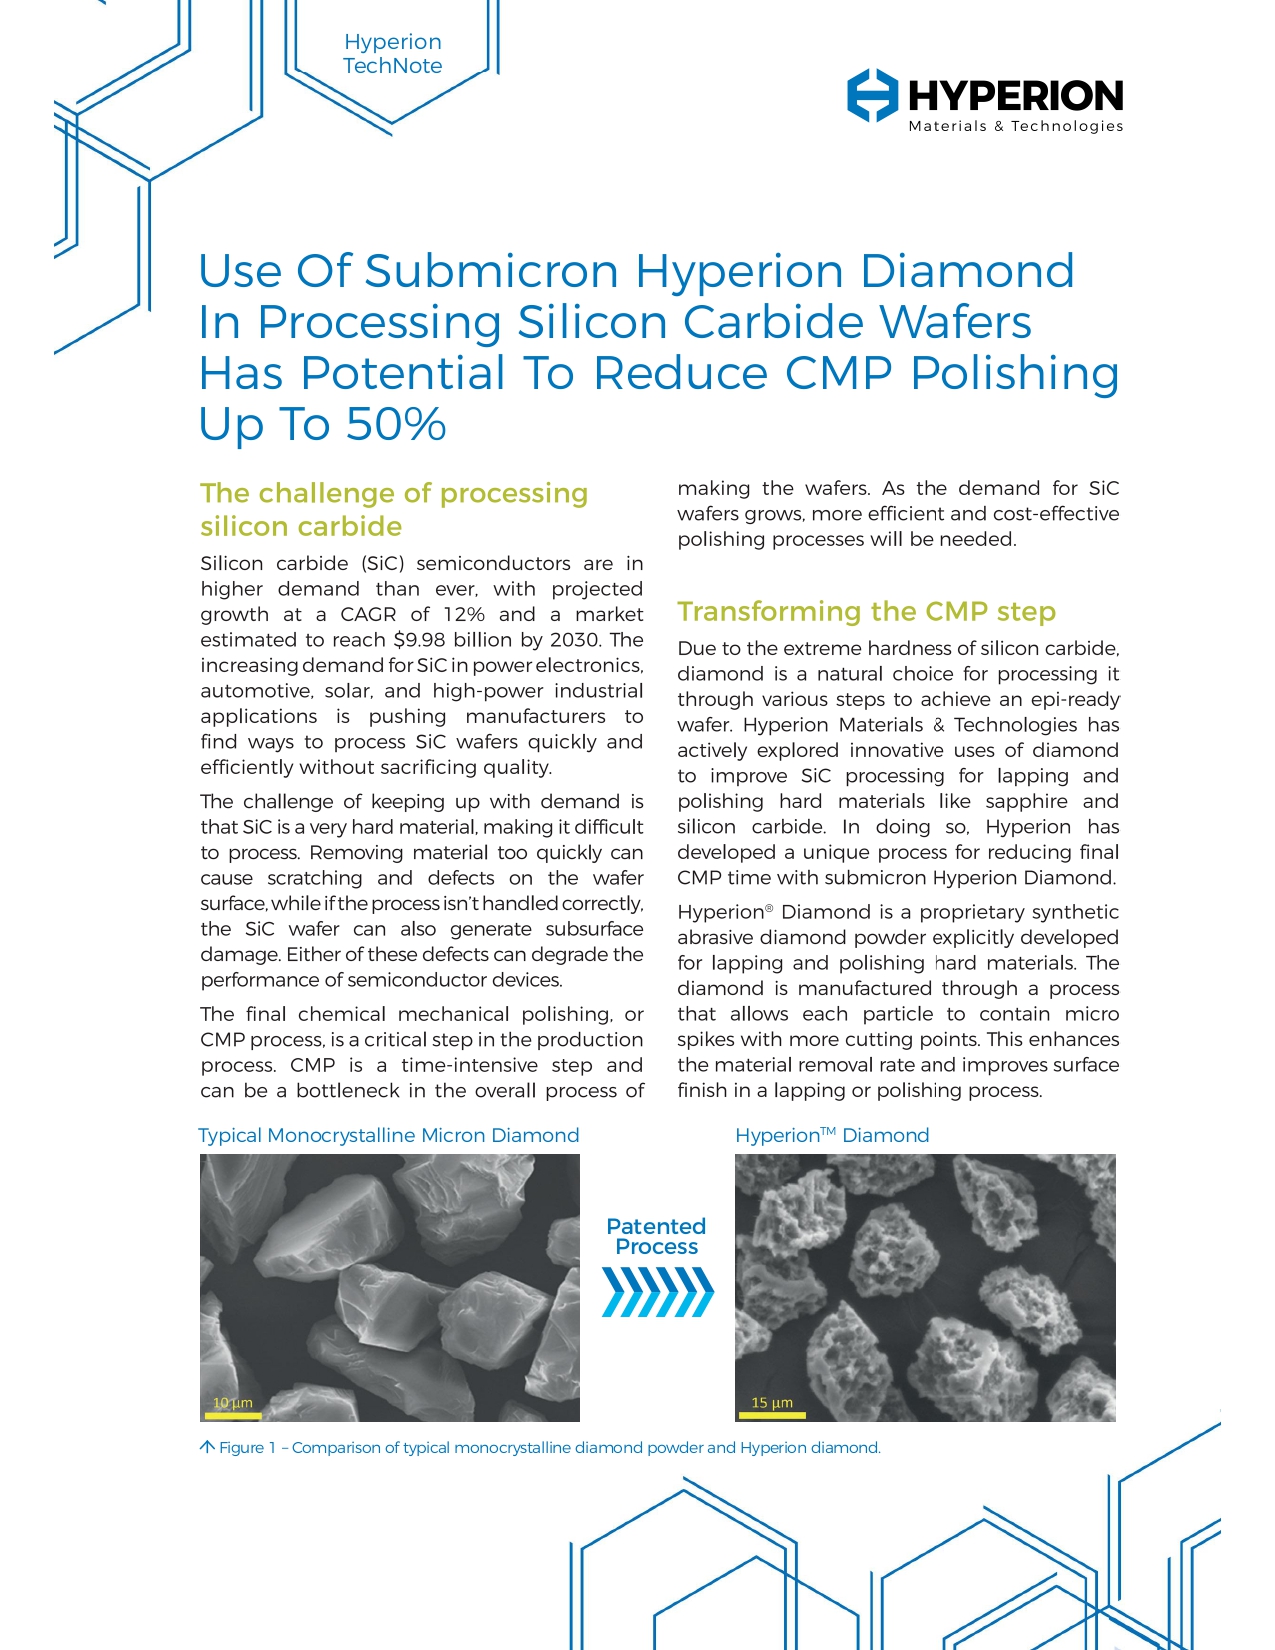 海博锐通过减少CMP抛光来提高碳化硅晶片的产量